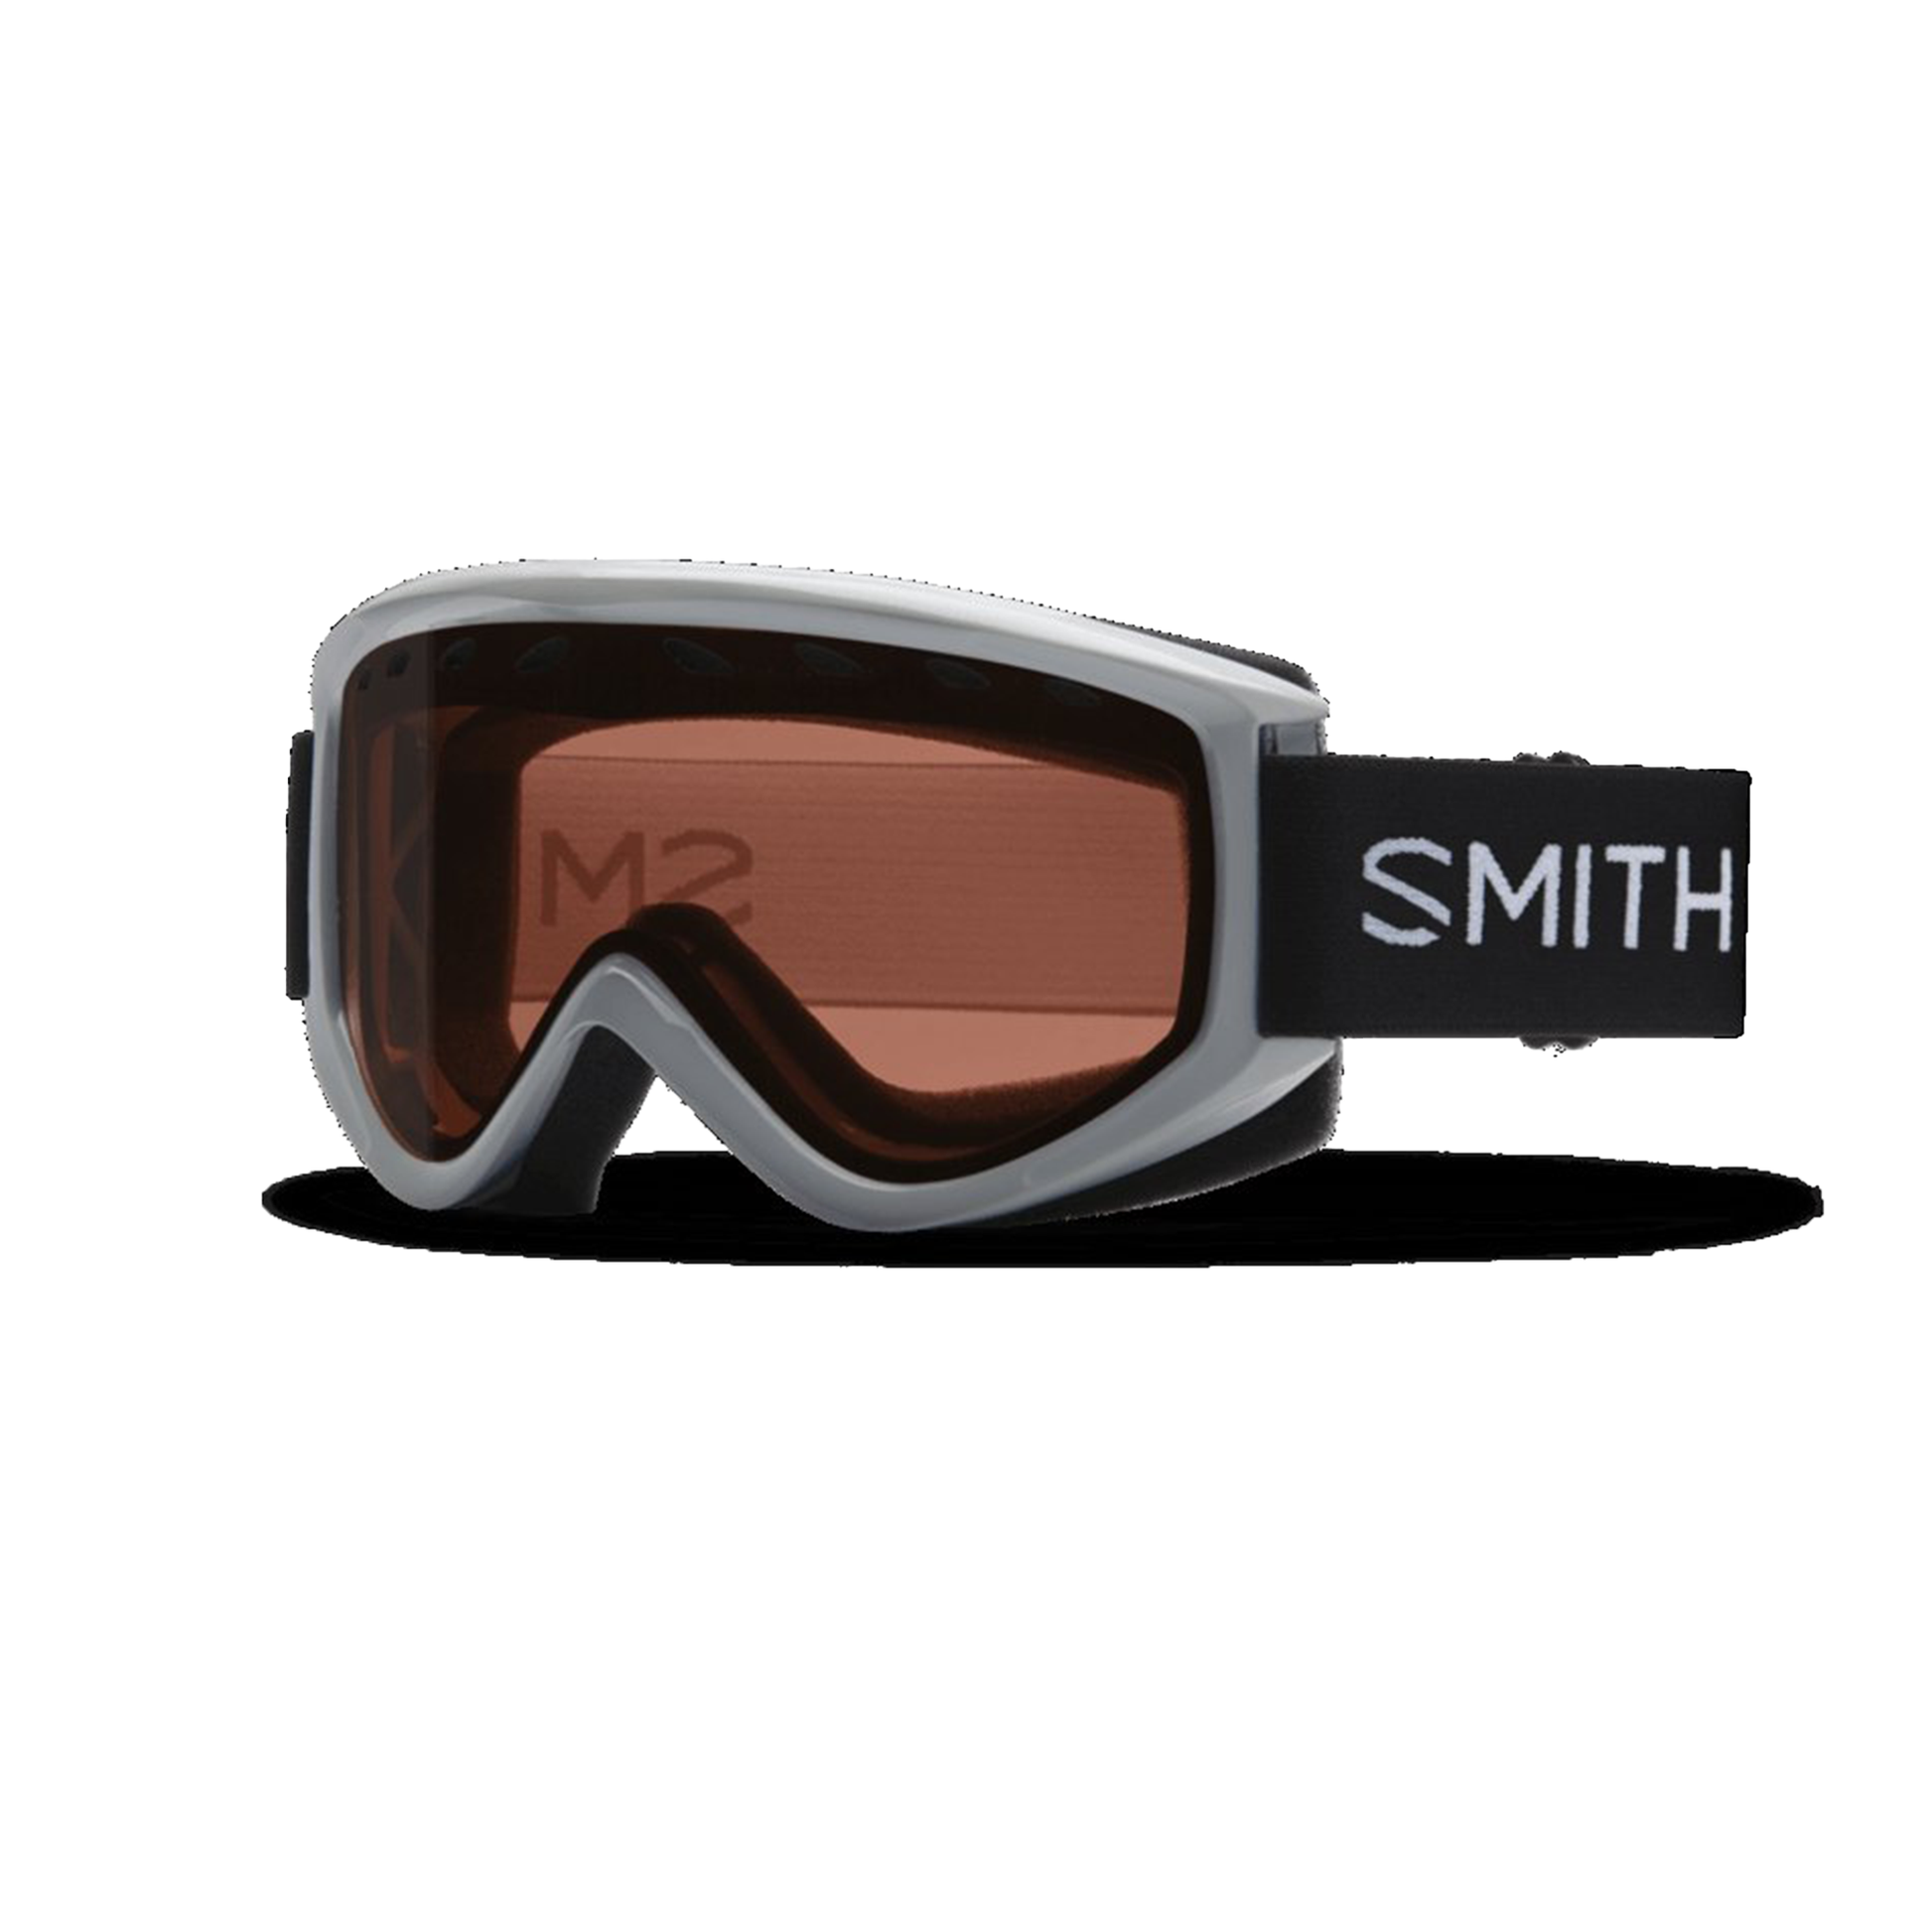 Smith Women's Electra Snow Goggle Silver RC36 - Smith Snow Goggles